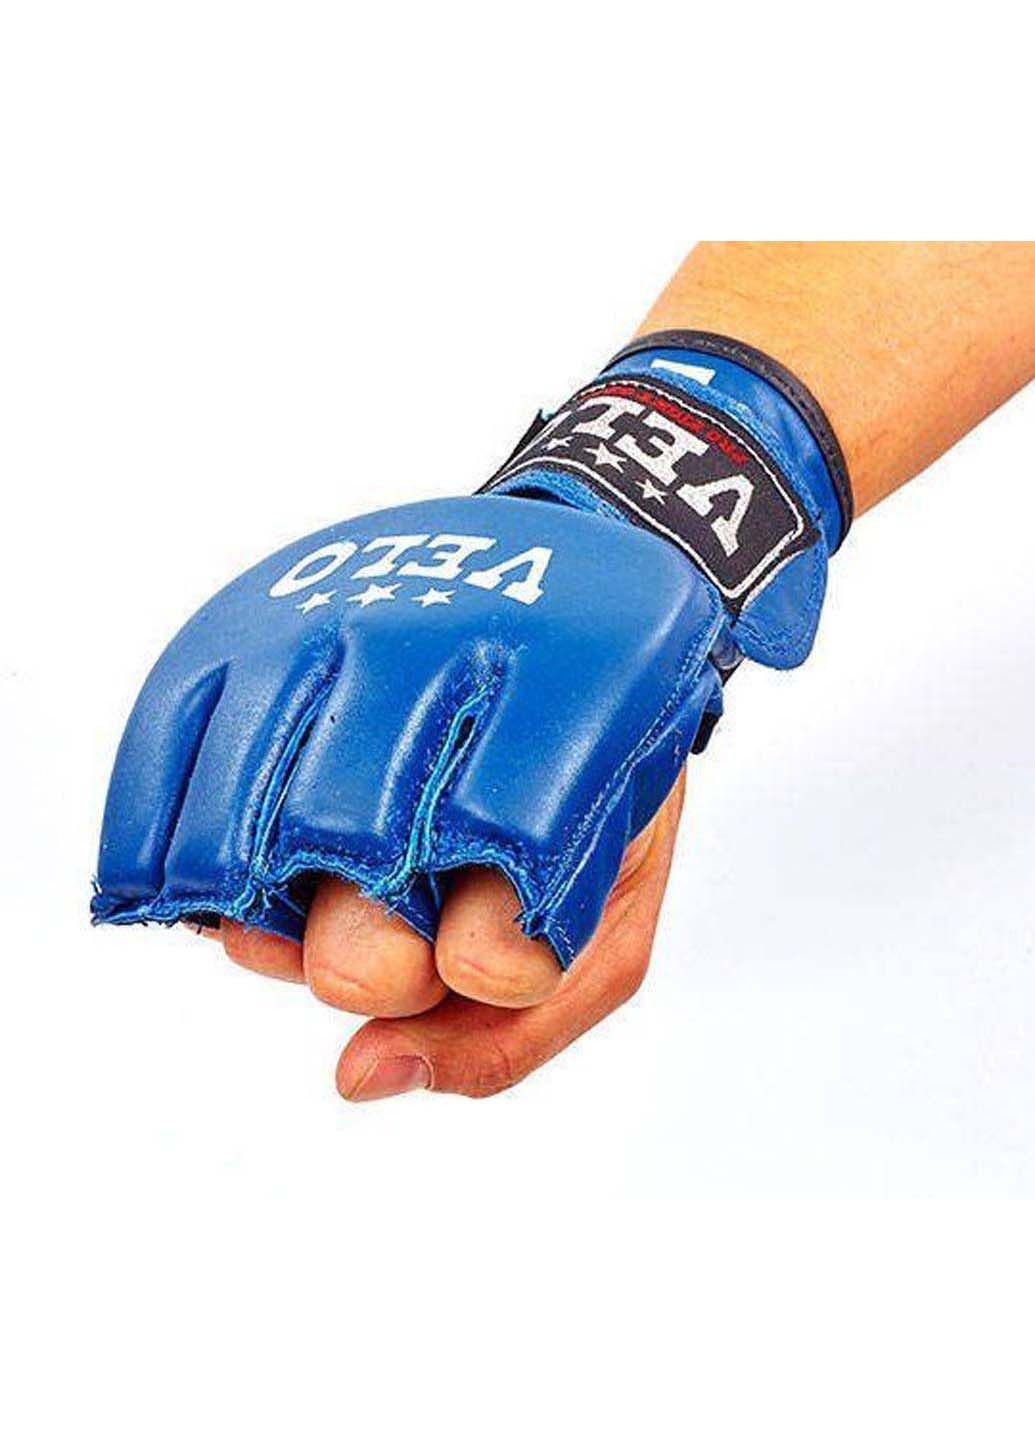 Перчатки для MMA ULI-4024 L Velo (285794356)